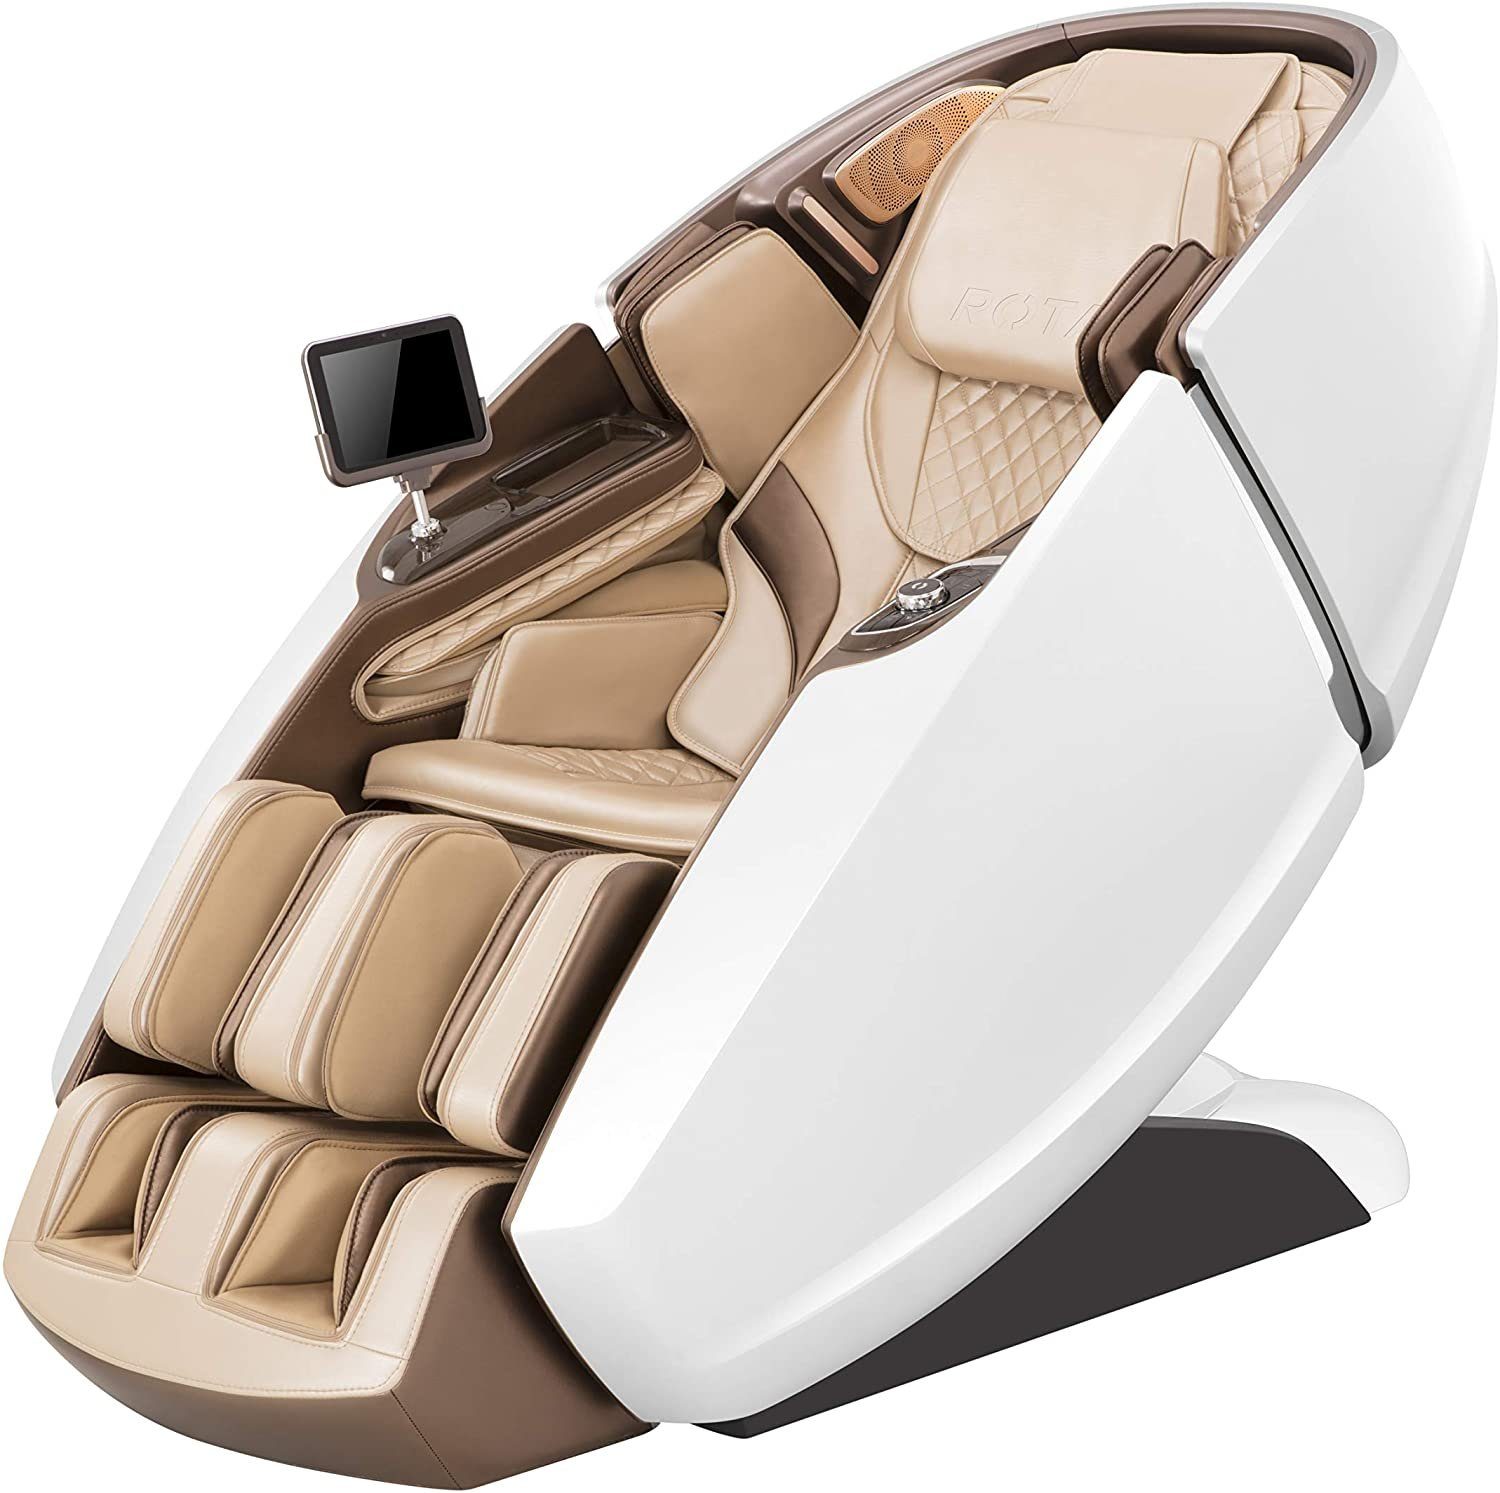 NAIPO Massagesessel, High-End Tablet, Raumkapsel-Design mit Massagestuhl WEISS-BEIGE 3D